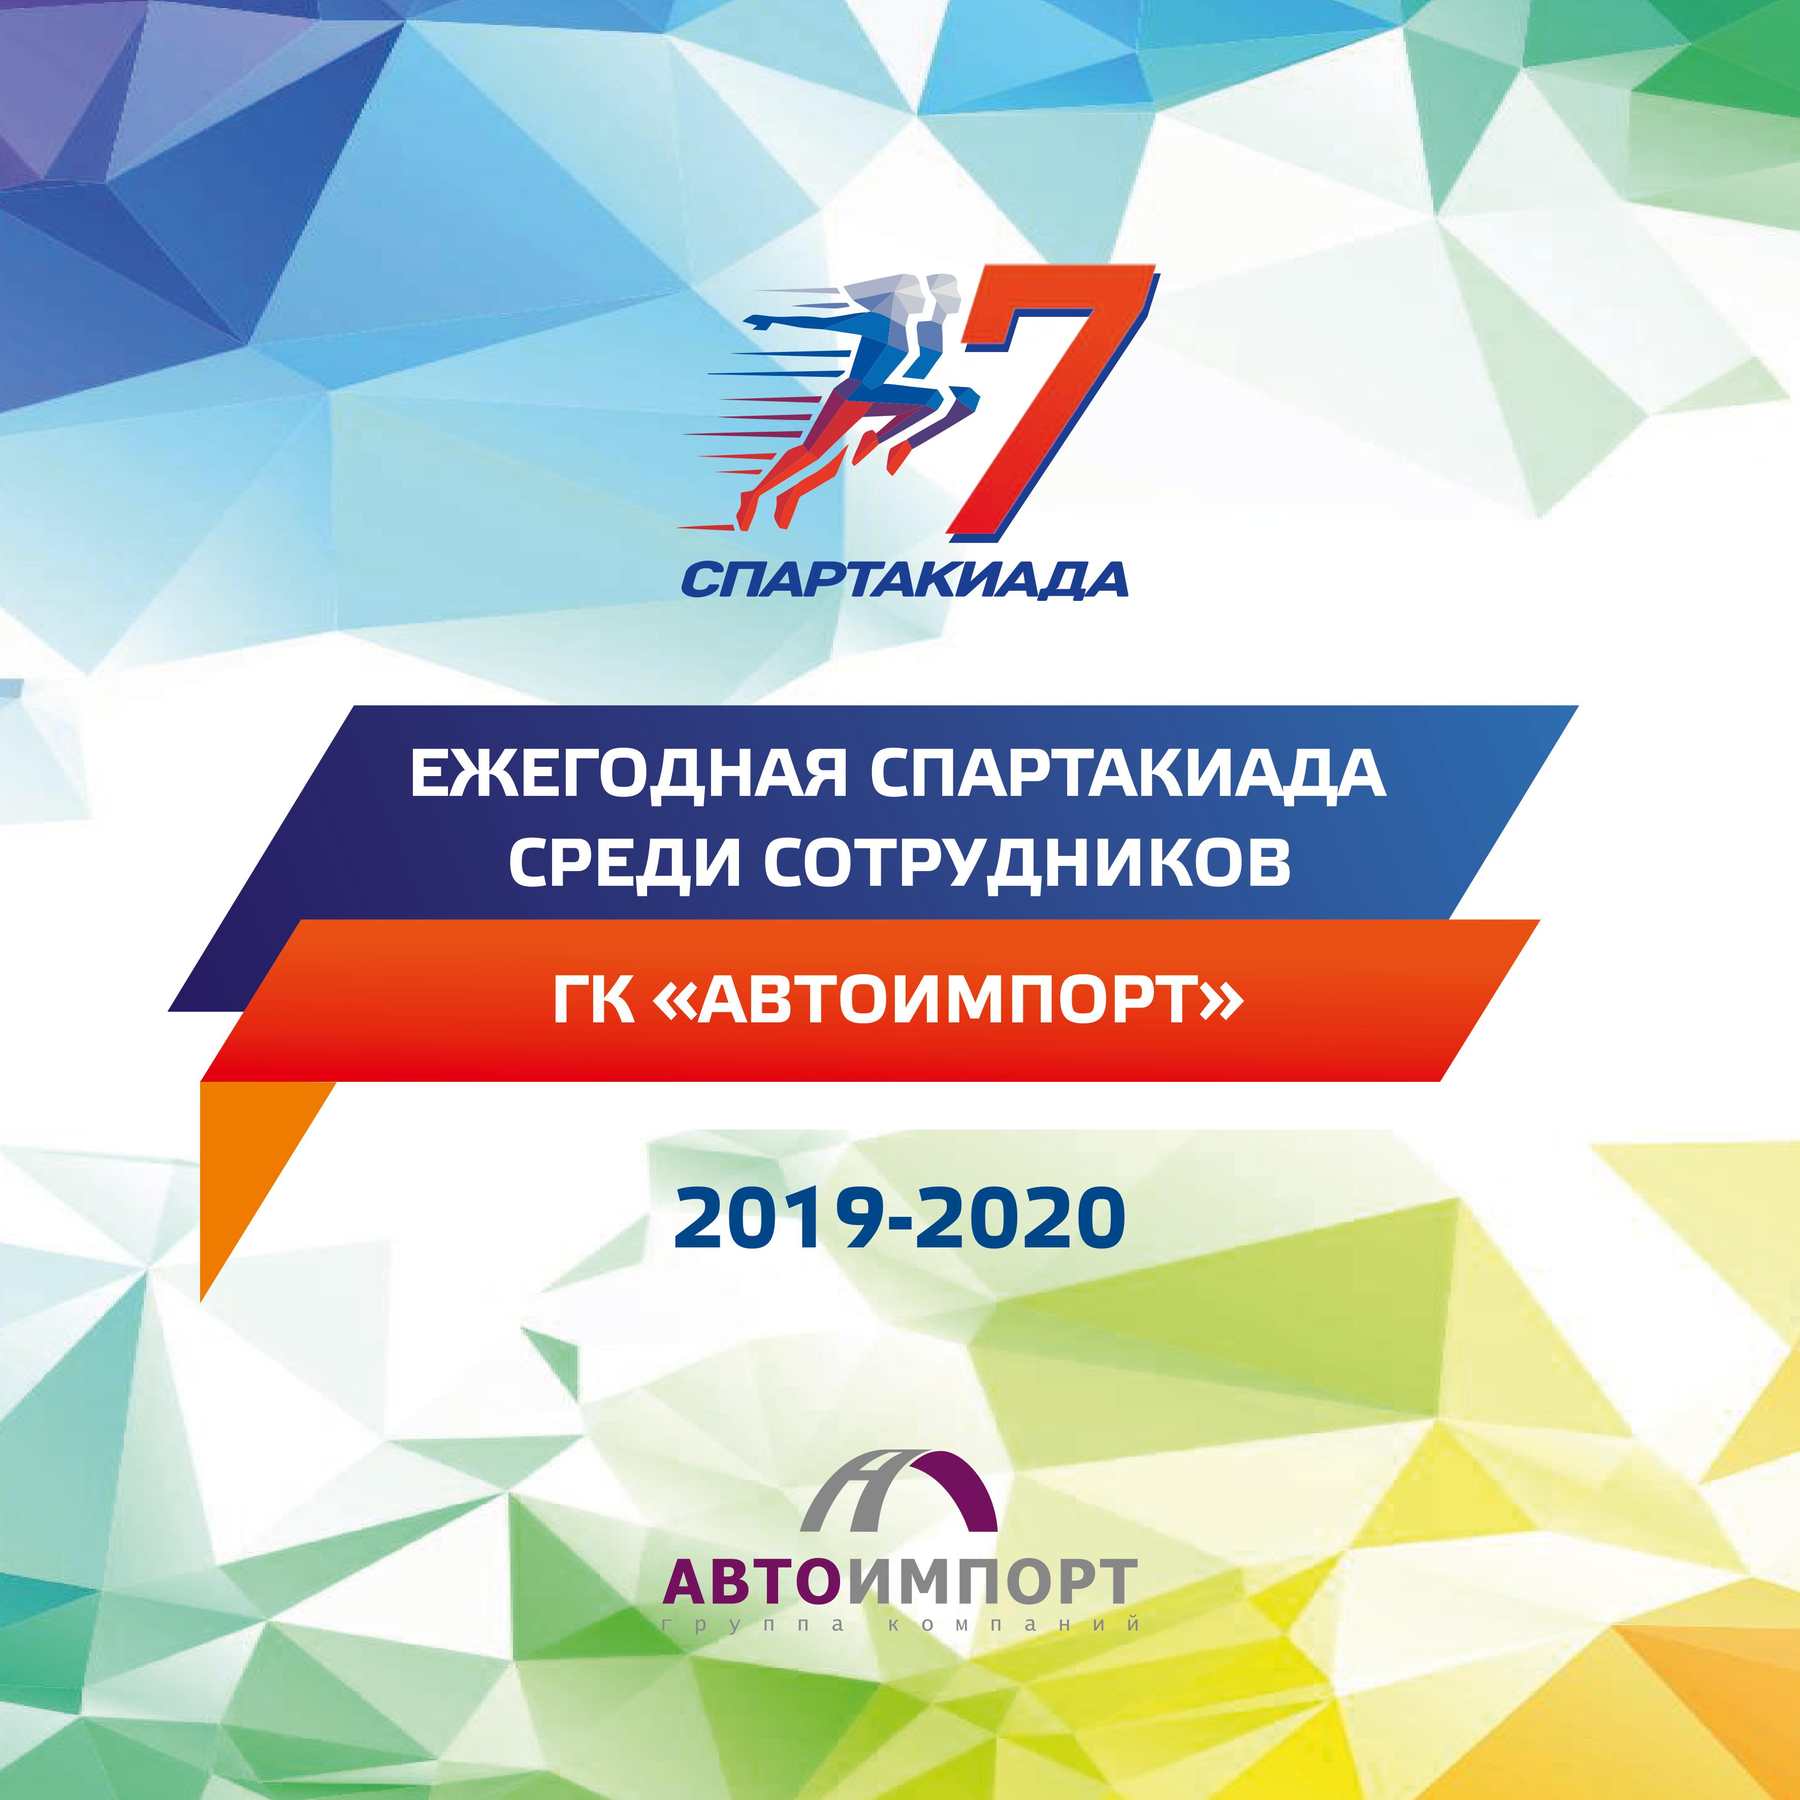 Спартакиада 2019-2020